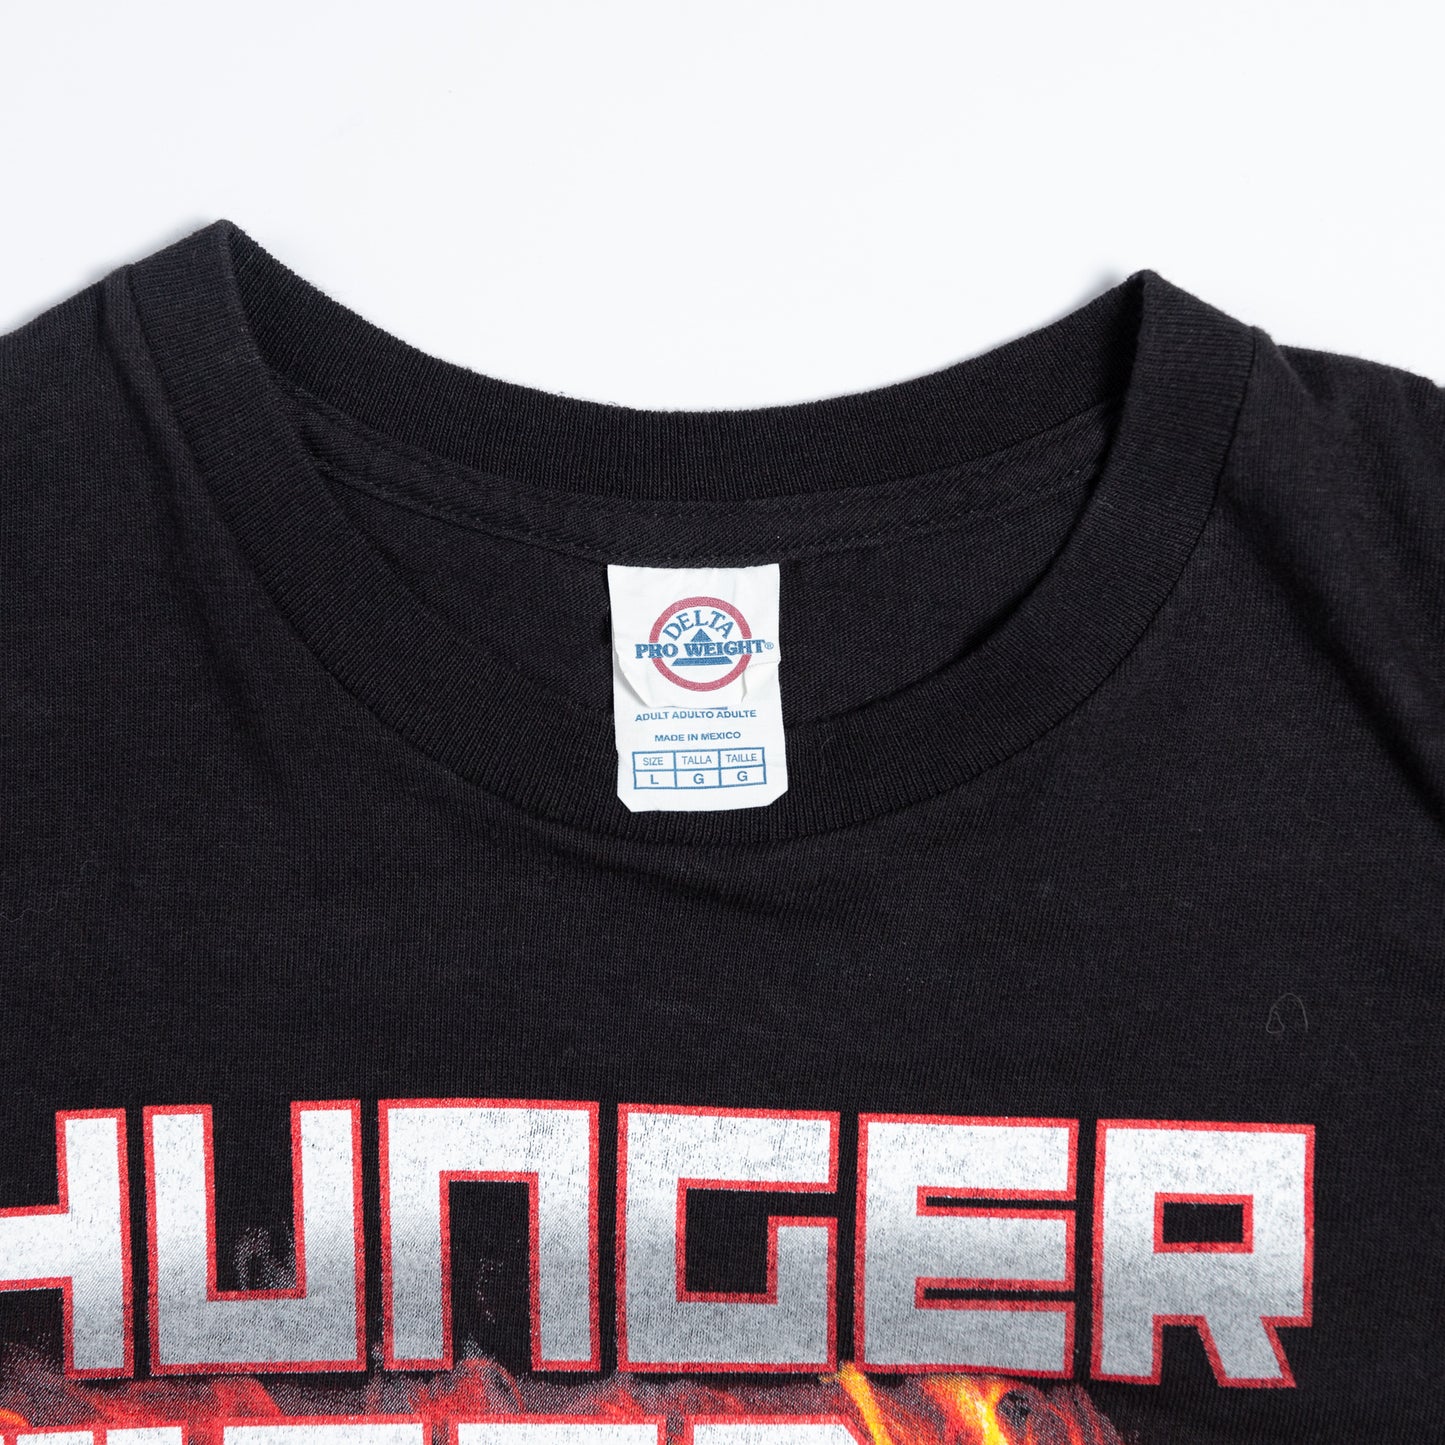 2013 Hunger Games Parody "Hunger For God" Religious Tee